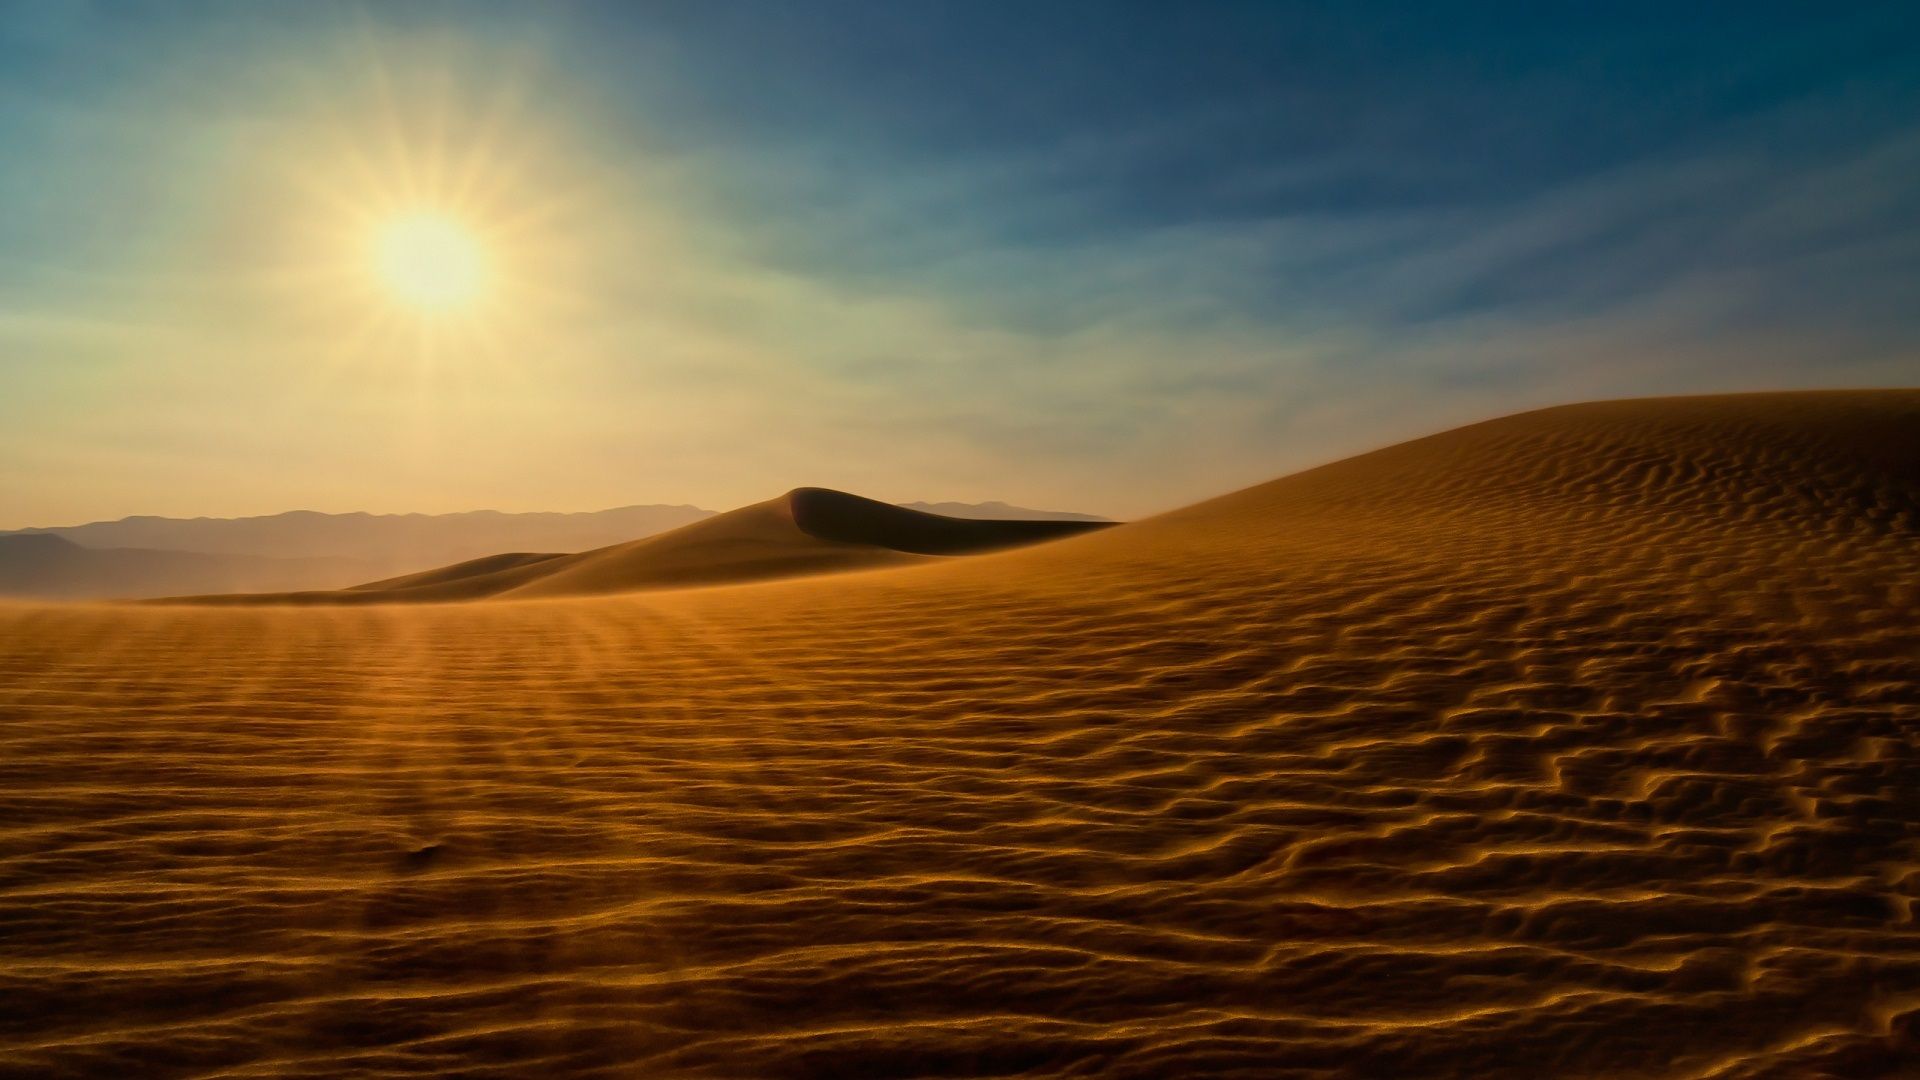 Wallpaper Sahara Desert, sunshine 1920x1080 Full HD 2K Picture, Image